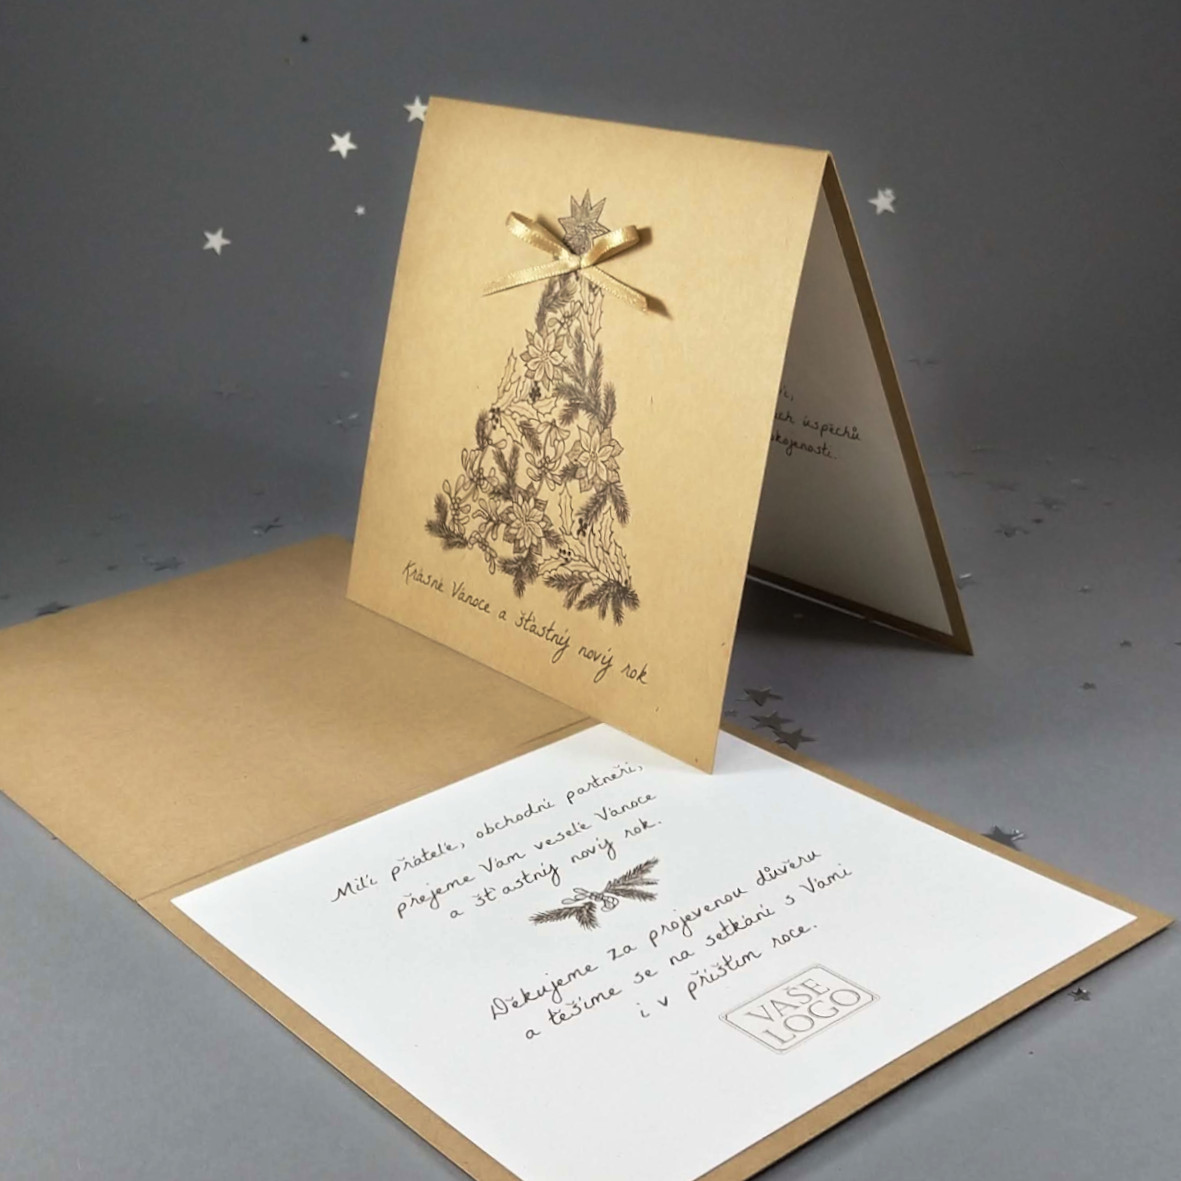 Novoroční-vánoční přání z ekologických recyklovaných papírů s motivem vánočního stromku se zlatou mašličkou. Otevírací, čtvercový formát 140 × 140 mm, digitální tisk.